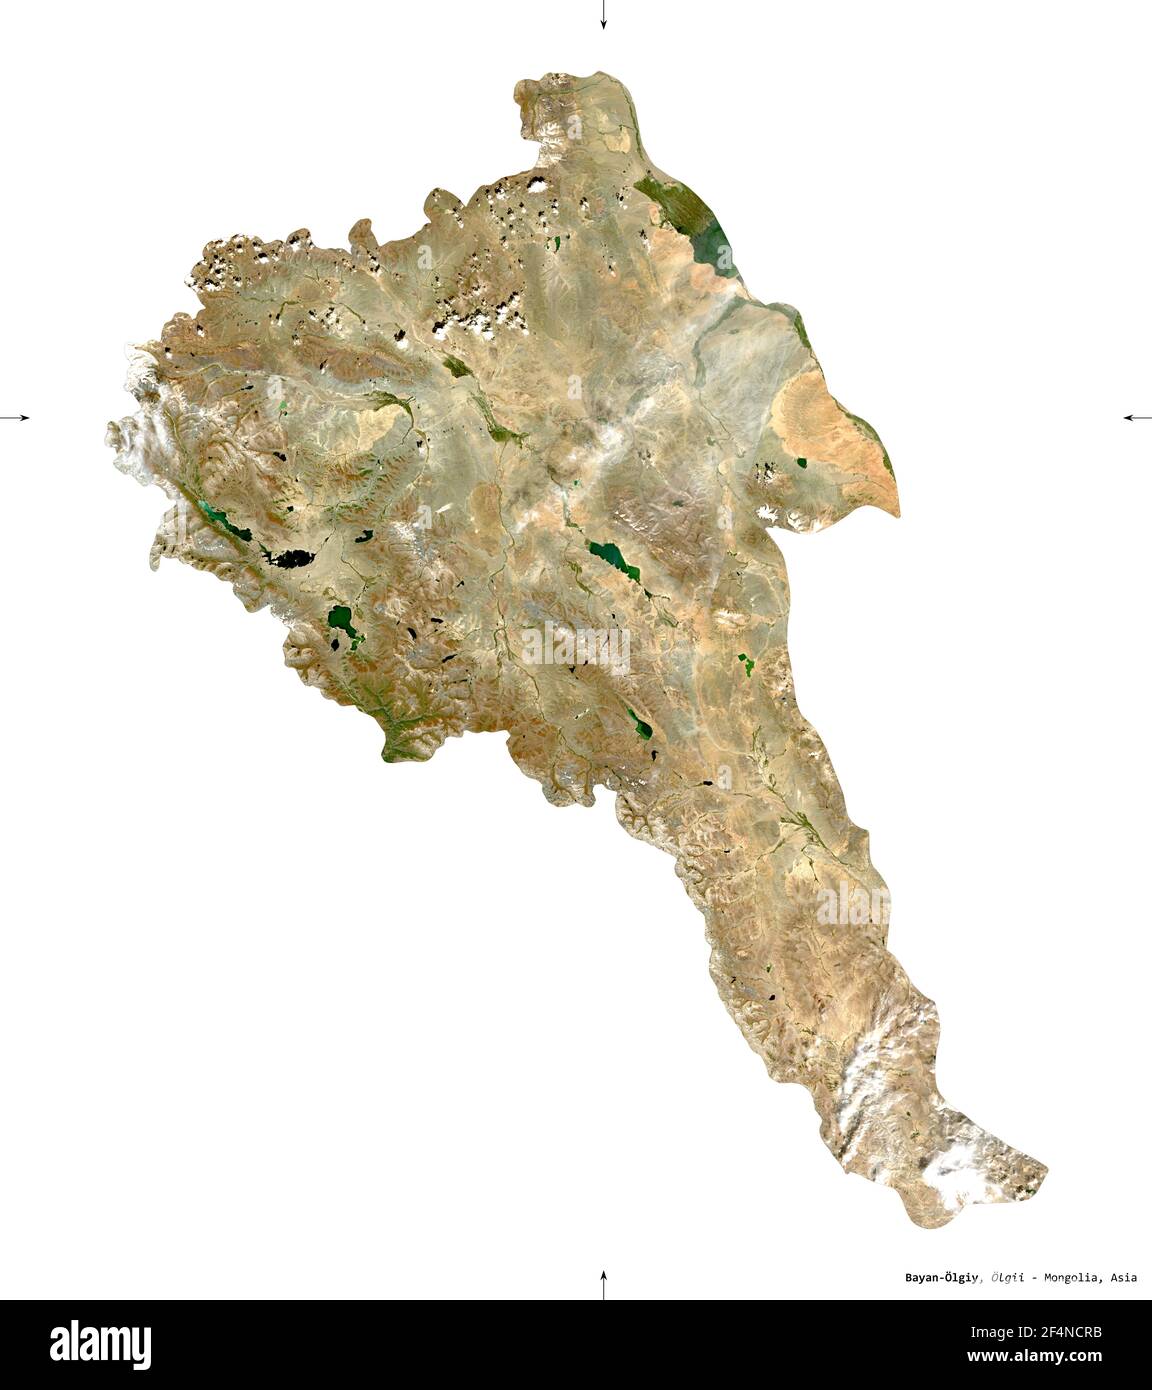 Bayan-Olgiy, provincia della Mongolia. Immagini satellitari Sentinel-2. Forma isolata su solido bianco. Descrizione, ubicazione della capitale. Contiene modifiche Foto Stock